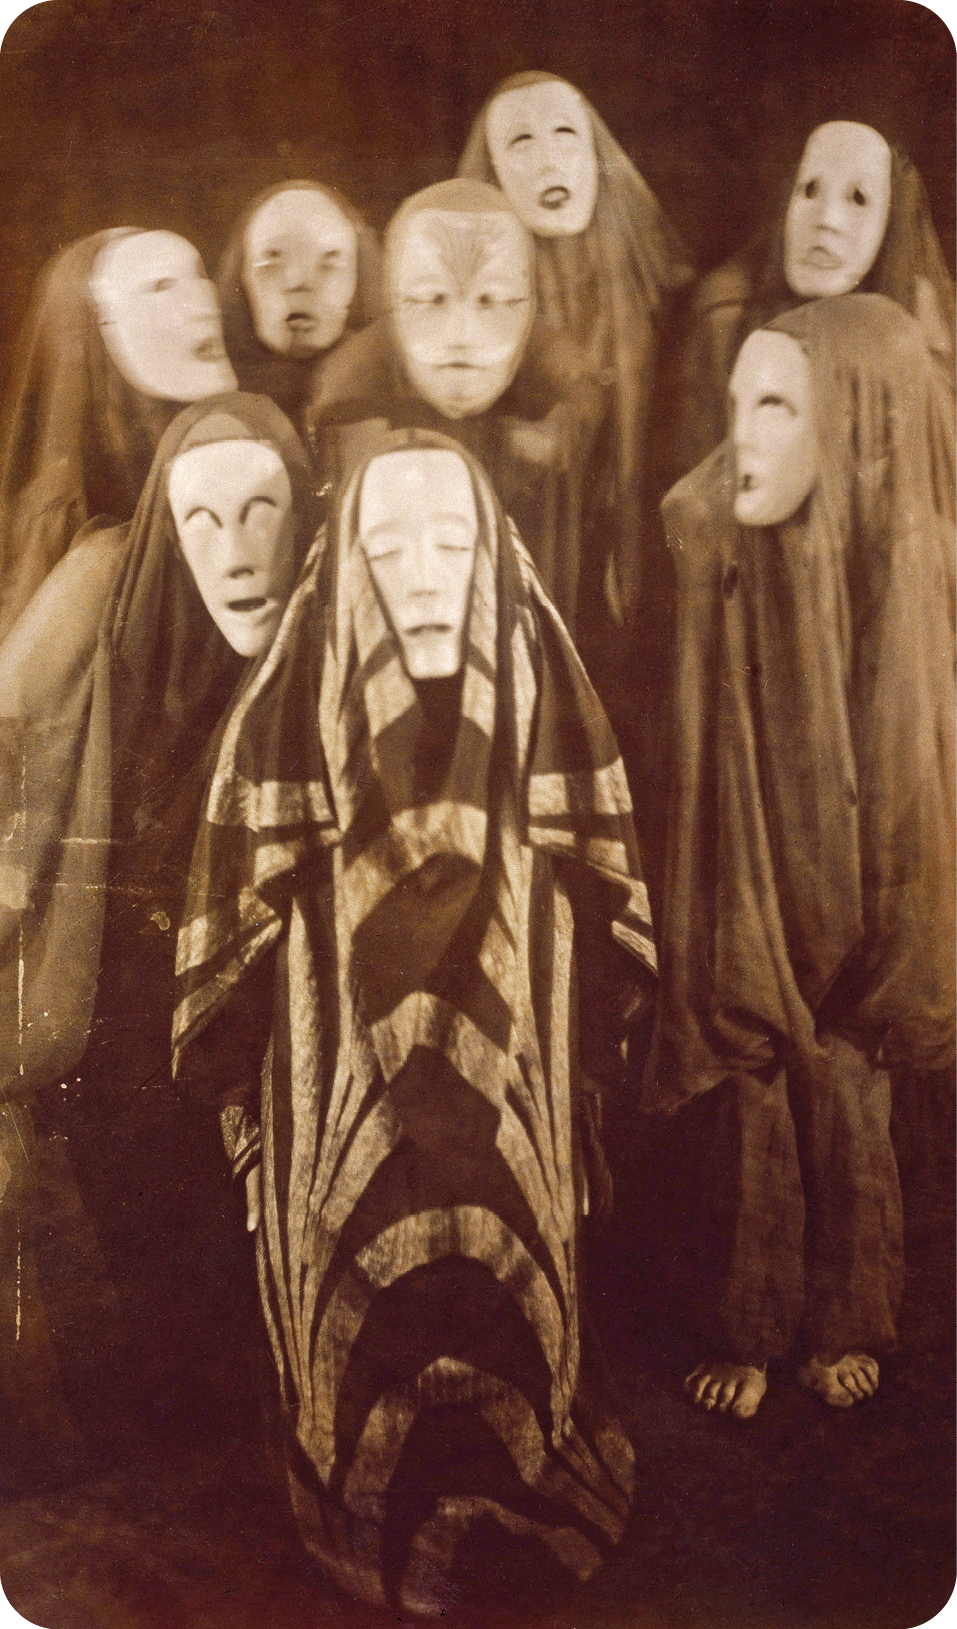 Fotografia em preto e branco. Sete pessoas em pé e vestidas com fantasias de pano preto longo e uma máscara branca com olhos fechados.